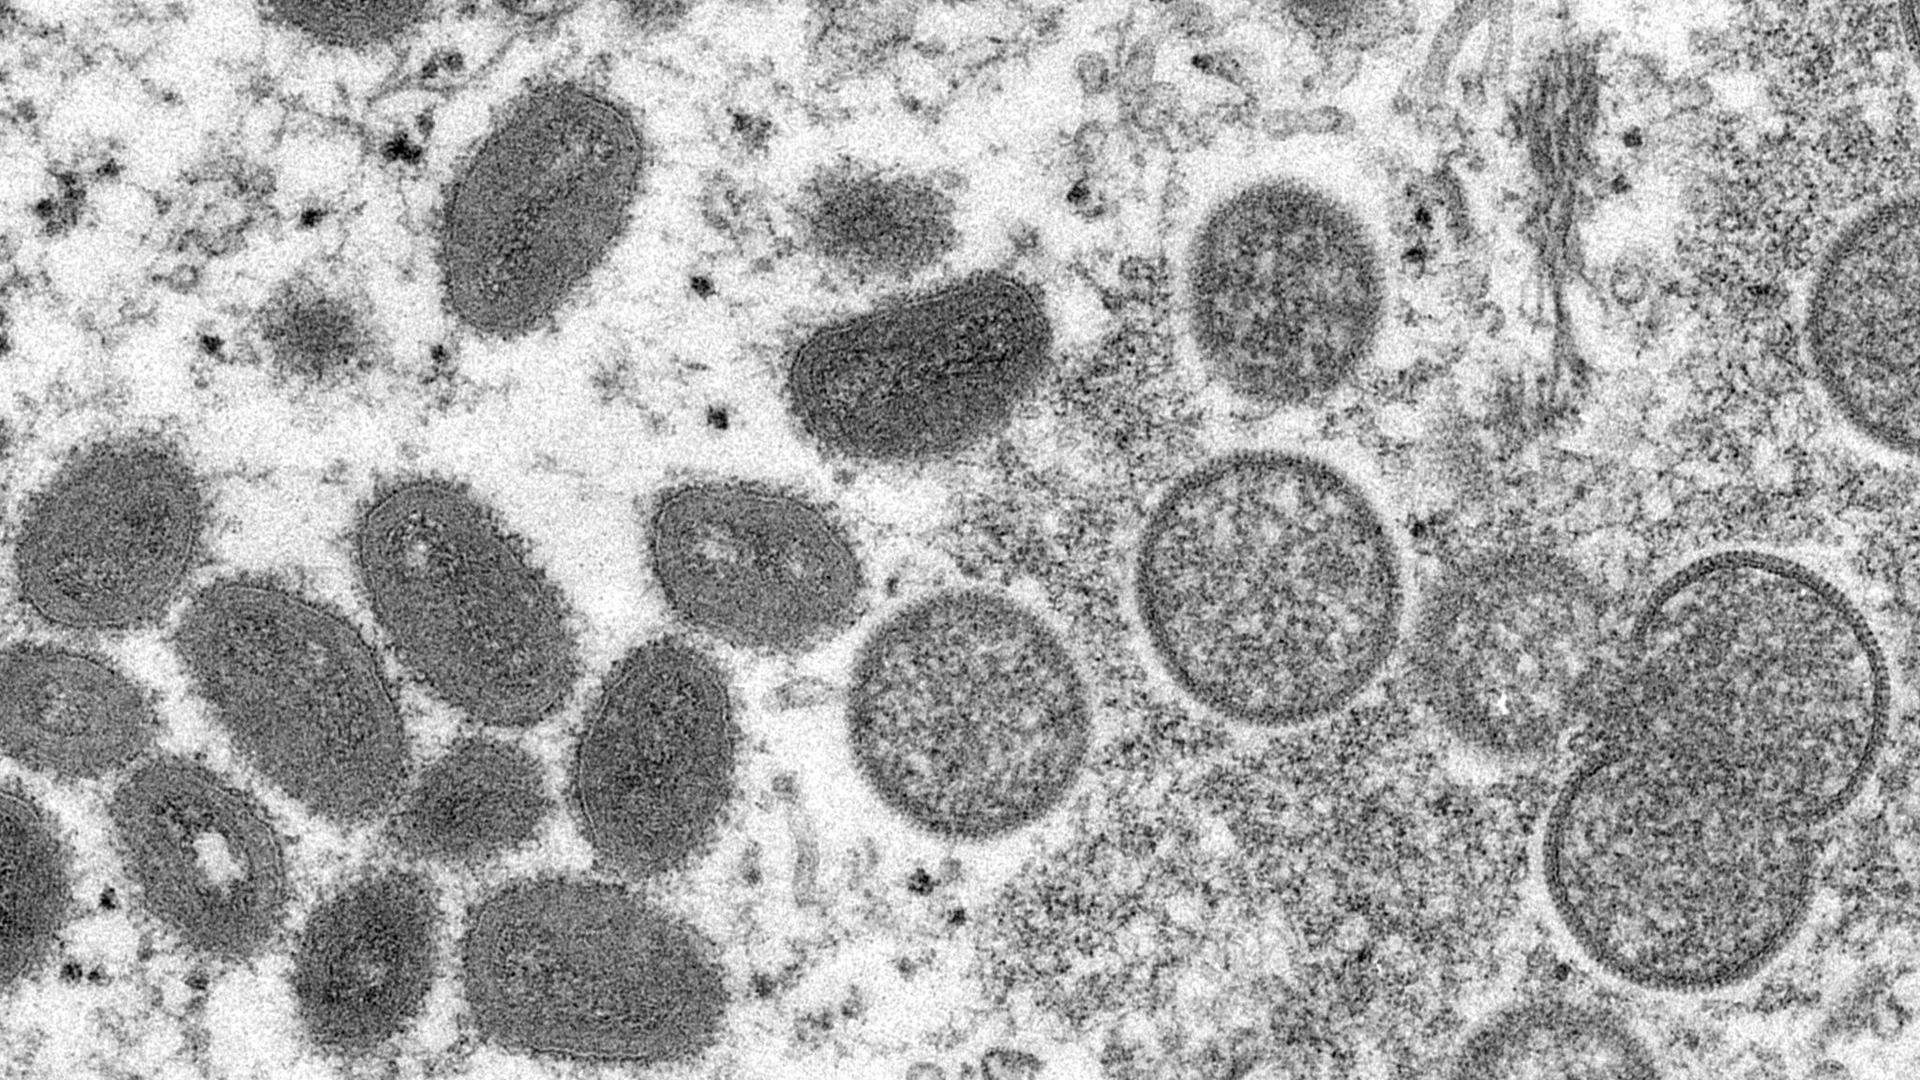 Die elektronenmikroskopische Aufnahme zeigt reife, ovale Affenpockenviren (l) und kugelförmige unreife Virionen (r) aus einer menschlichen Hautprobe.